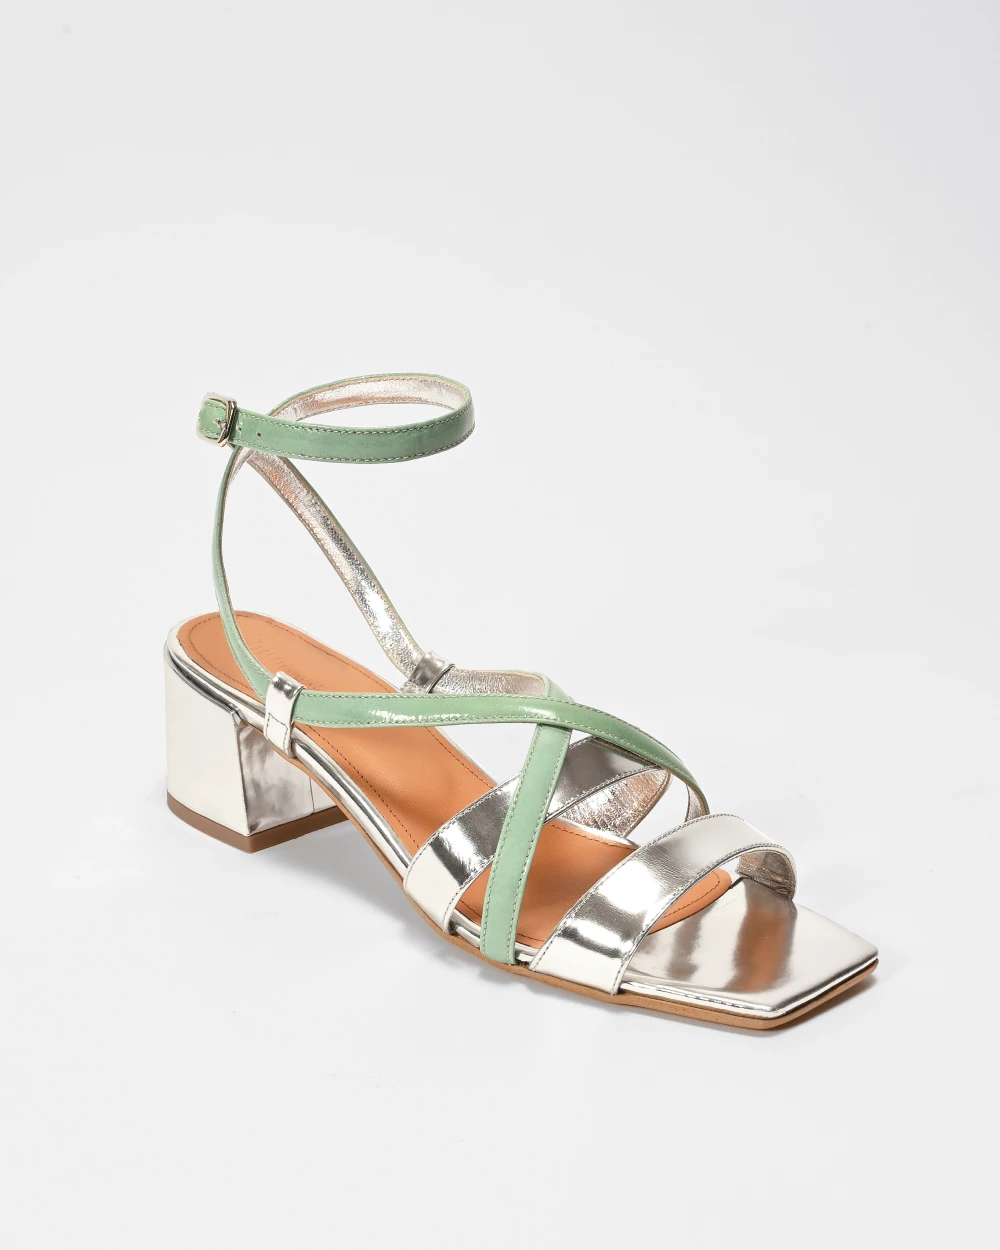 EDUARDO les sandales bicolores à talons carrés avec brides réglables cuir argent et vert d'eau. Idéales pour un mariage